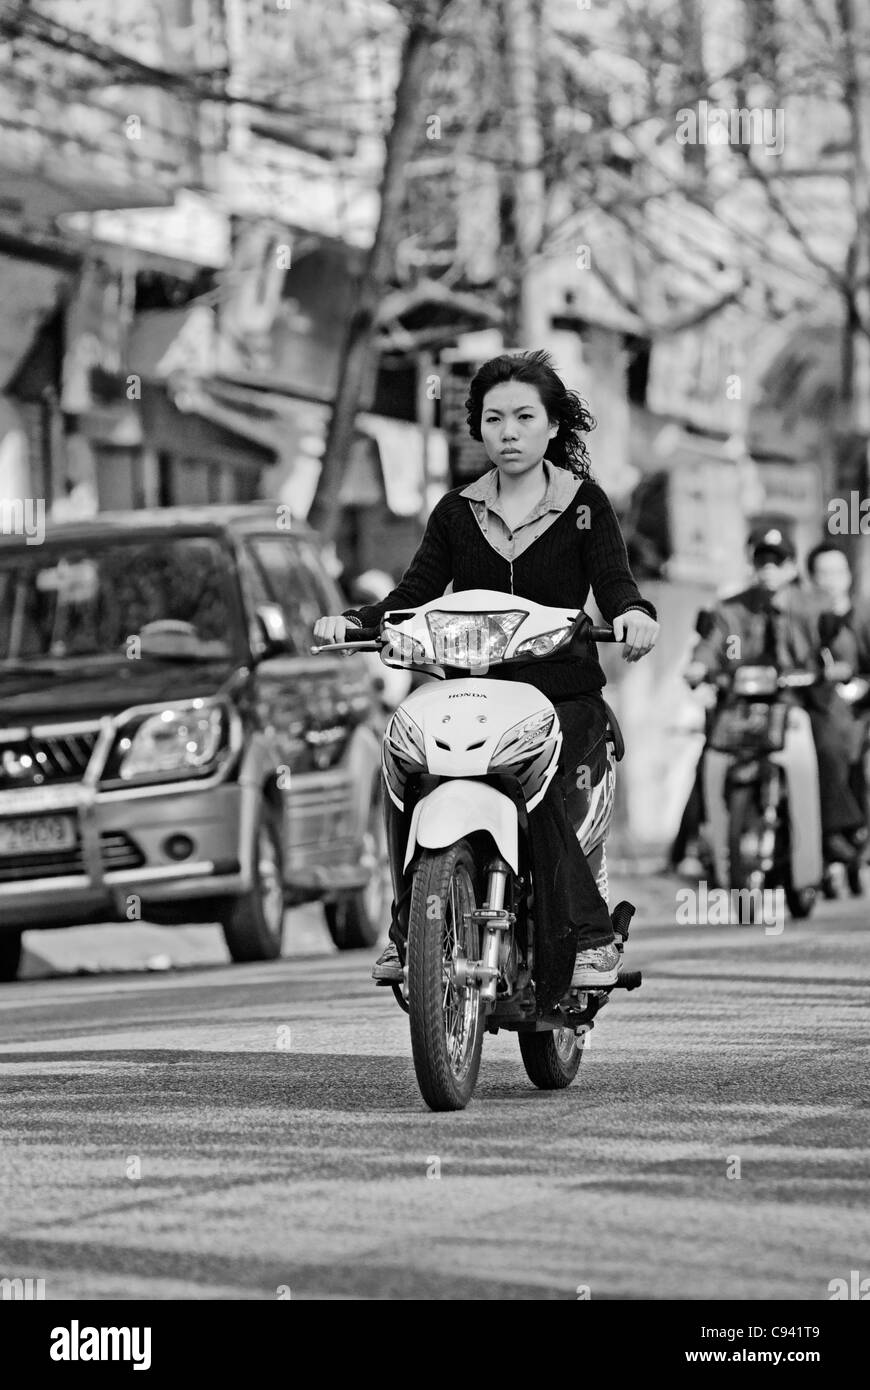 Asia, Vietnam, Hanoi. Hanoi old quarter. Young vietnamese woman riding a small motorbike through Hanoi. Stock Photo